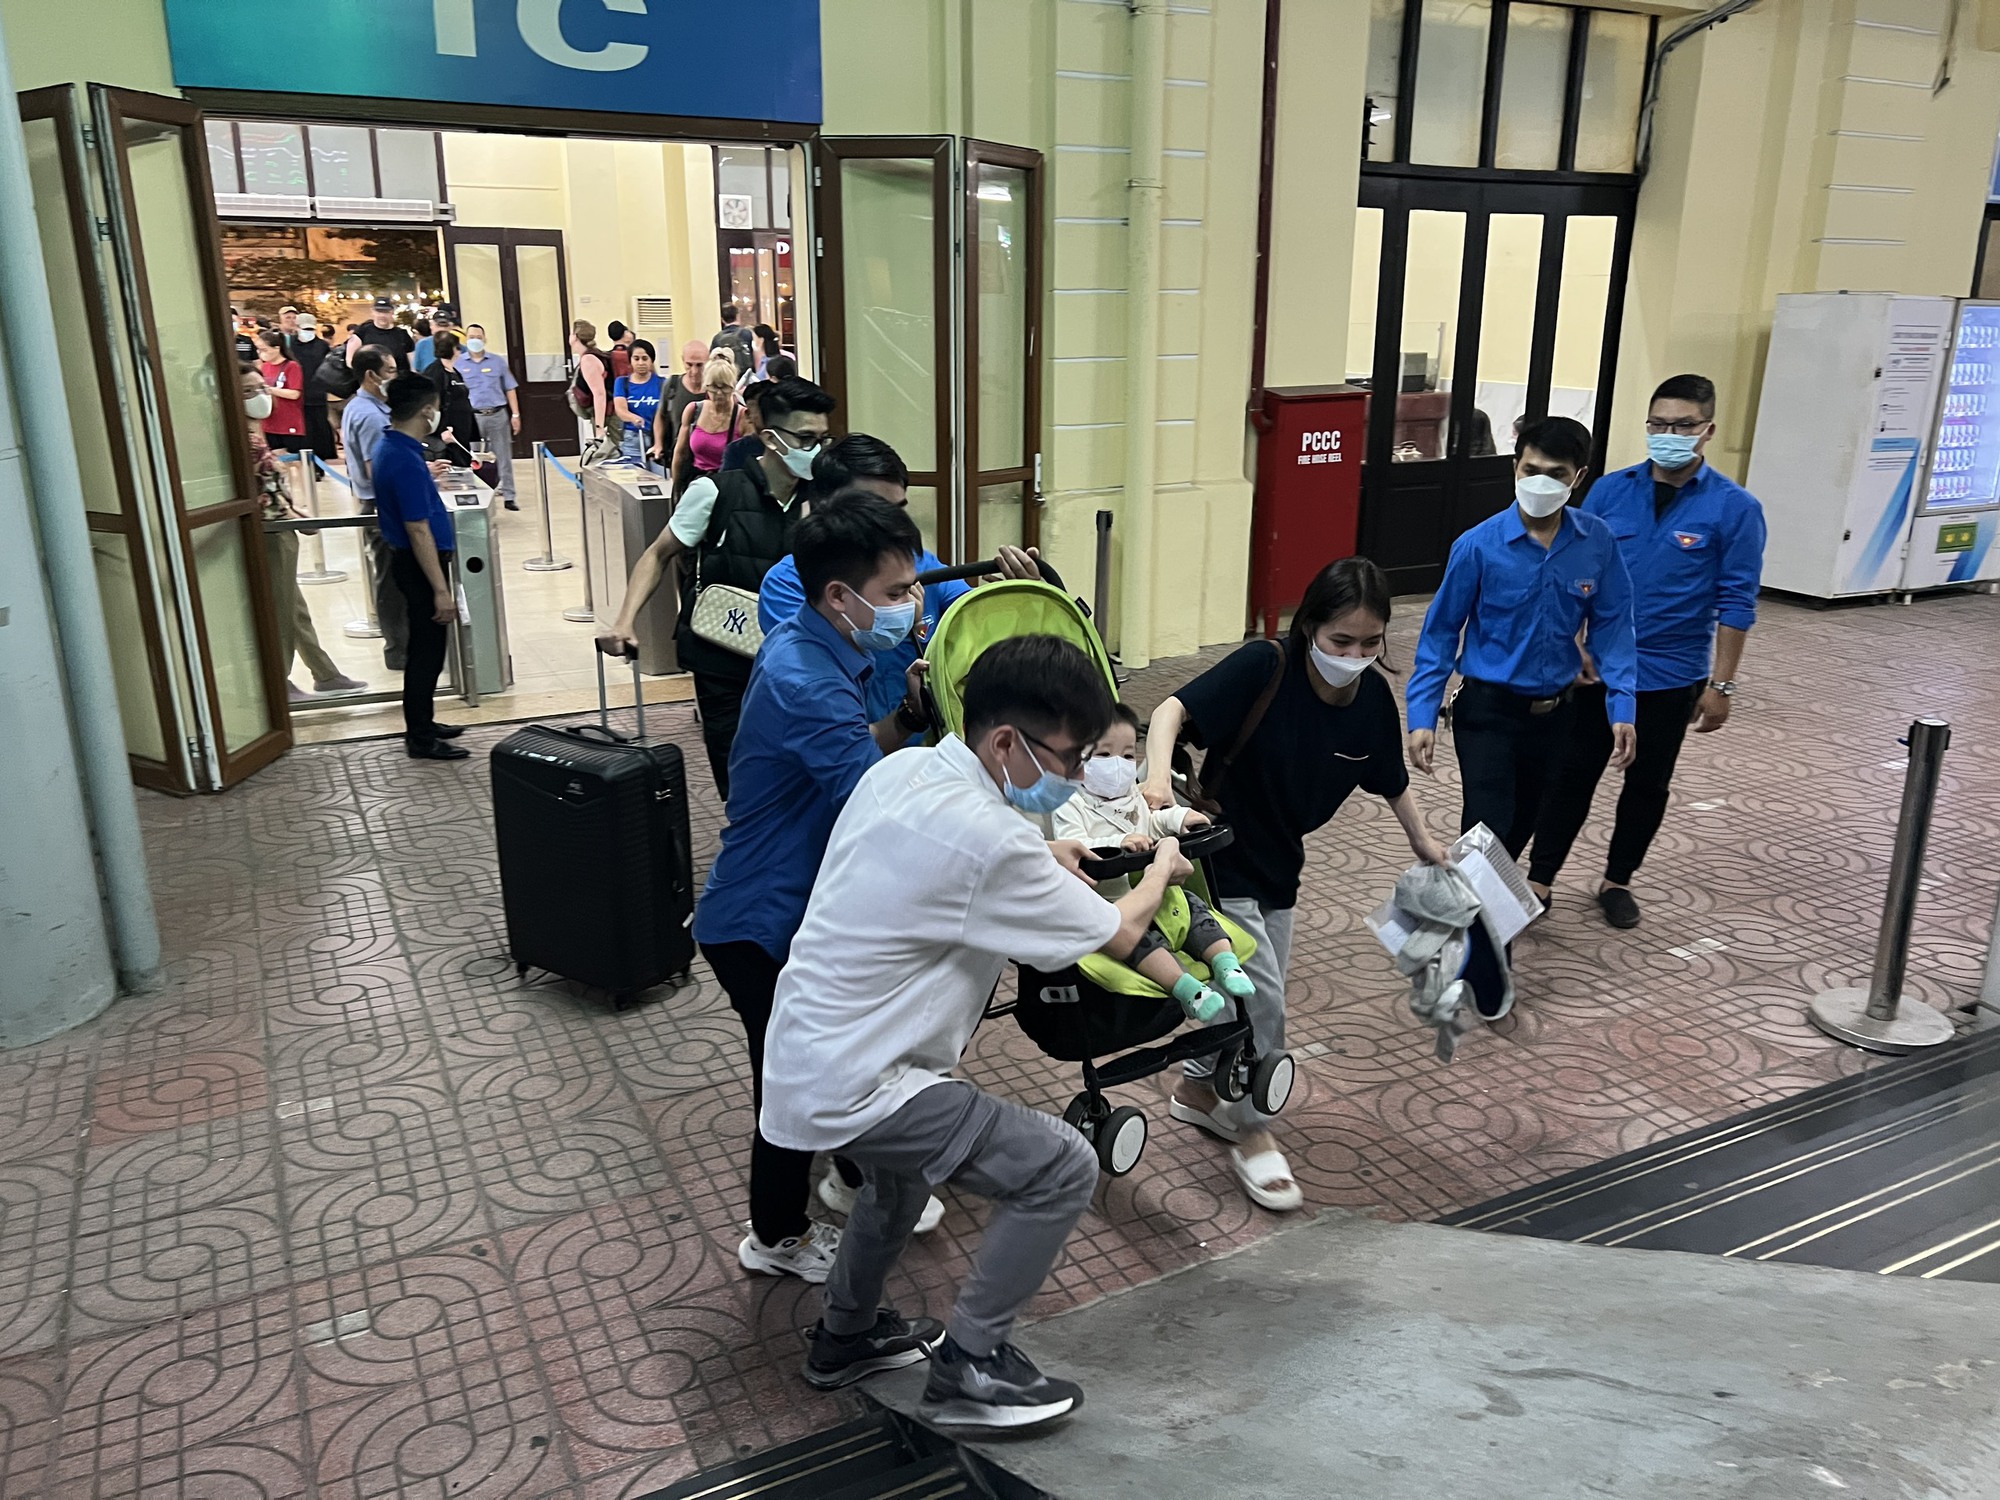 Cận cảnh người dân đổ dồn về ga Hà Nội về quê nghỉ lễ 30/4 - 1/5 - Ảnh 5.